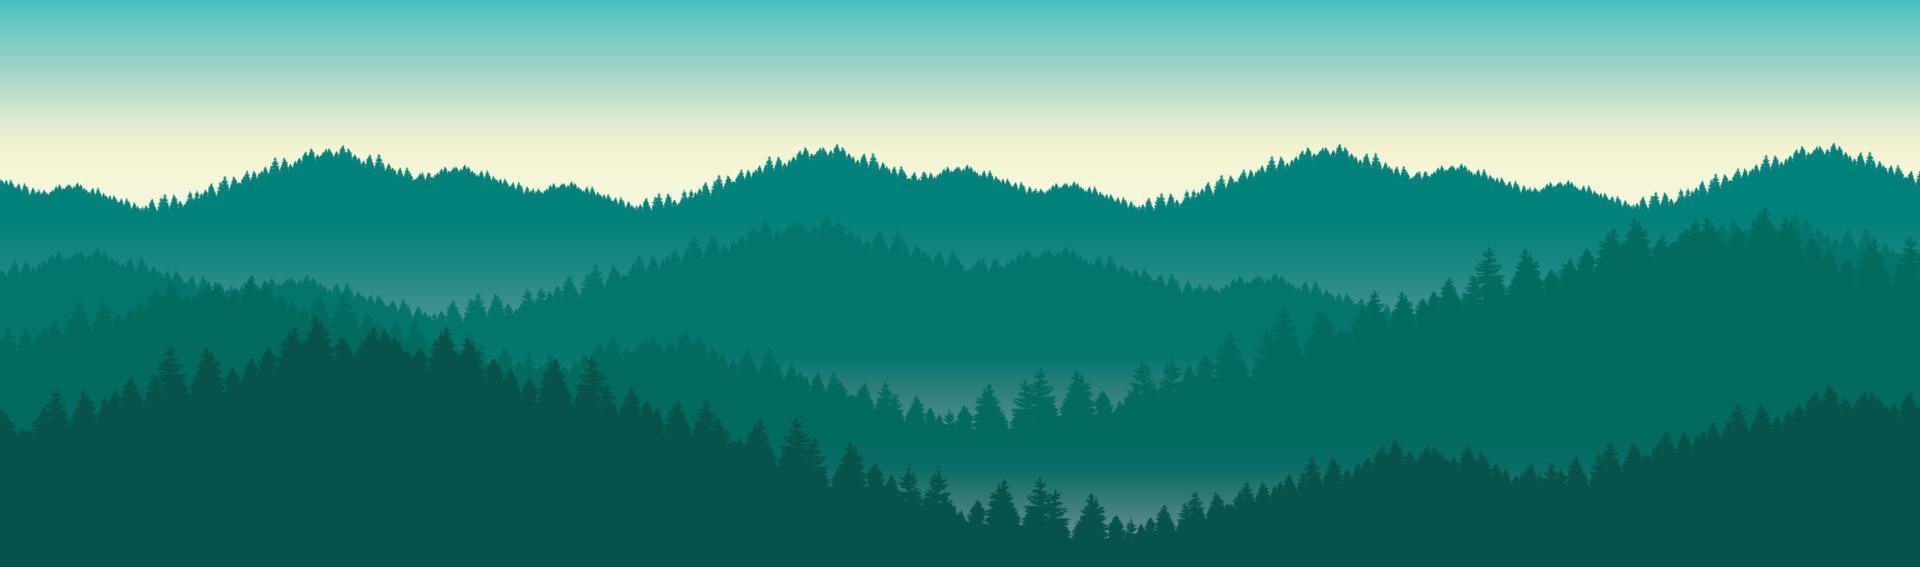 illustration av ett bergslandskap med kullar och en skog med tallar. under den gröna vårhimlen vektor